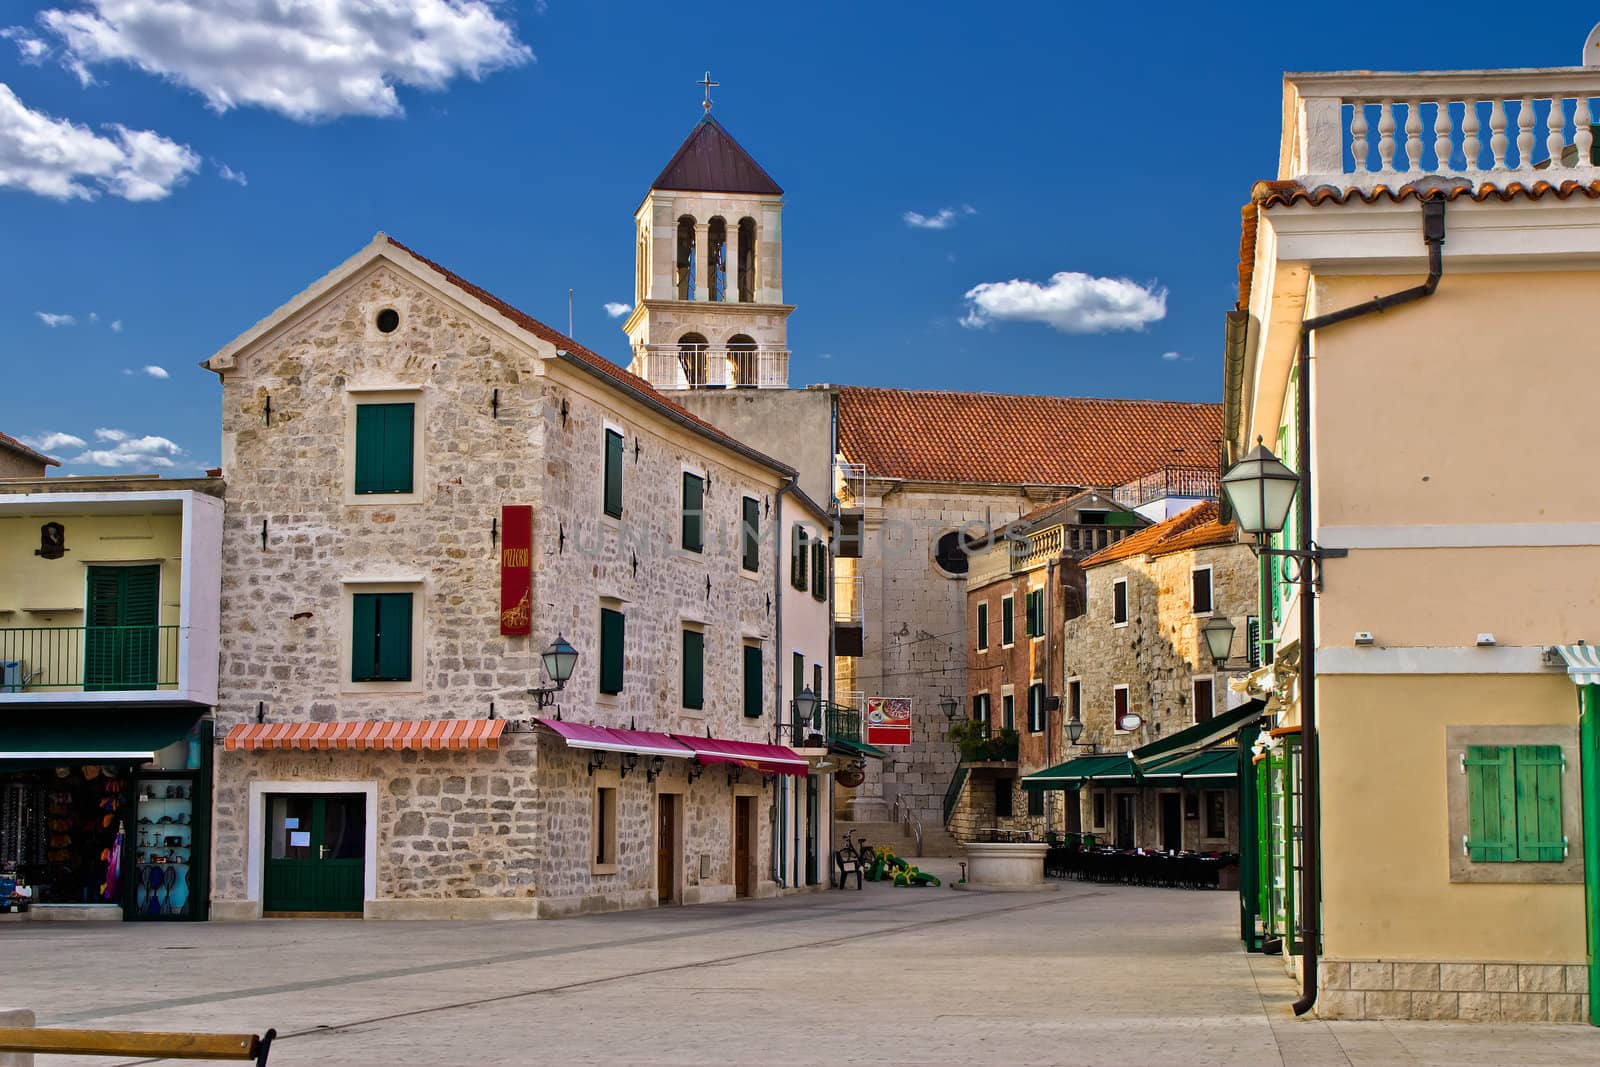 Adriatic Town of Vodice, Croatia by xbrchx